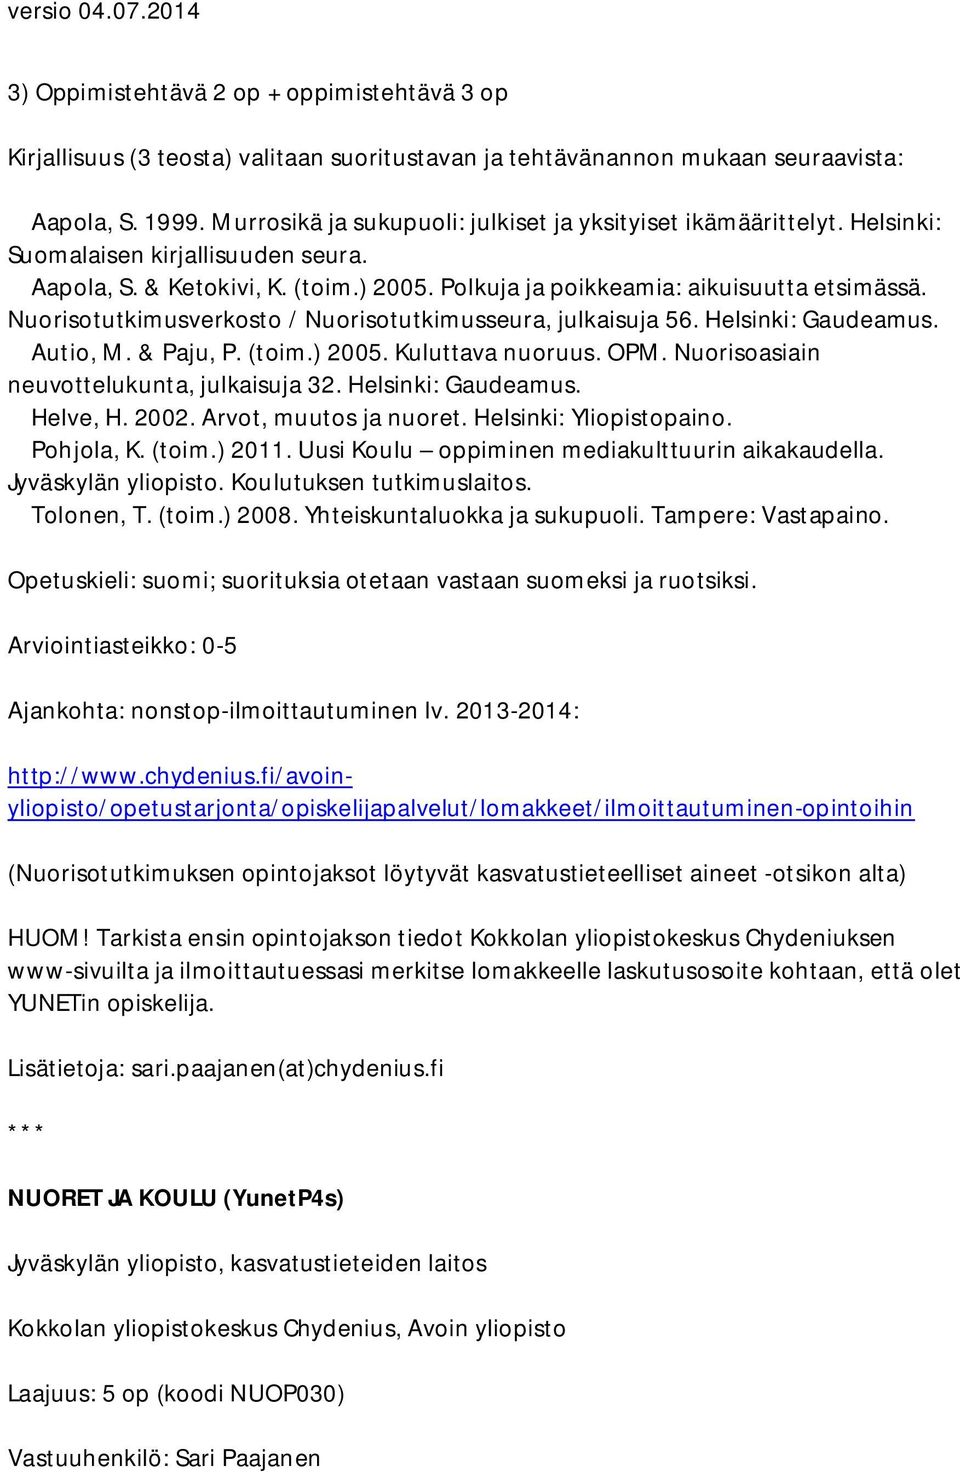 Nuorisotutkimusverkosto / Nuorisotutkimusseura, julkaisuja 56. Helsinki: Gaudeamus. Autio, M. & Paju, P. (toim.) 2005. Kuluttava nuoruus. OPM. Nuorisoasiain neuvottelukunta, julkaisuja 32.